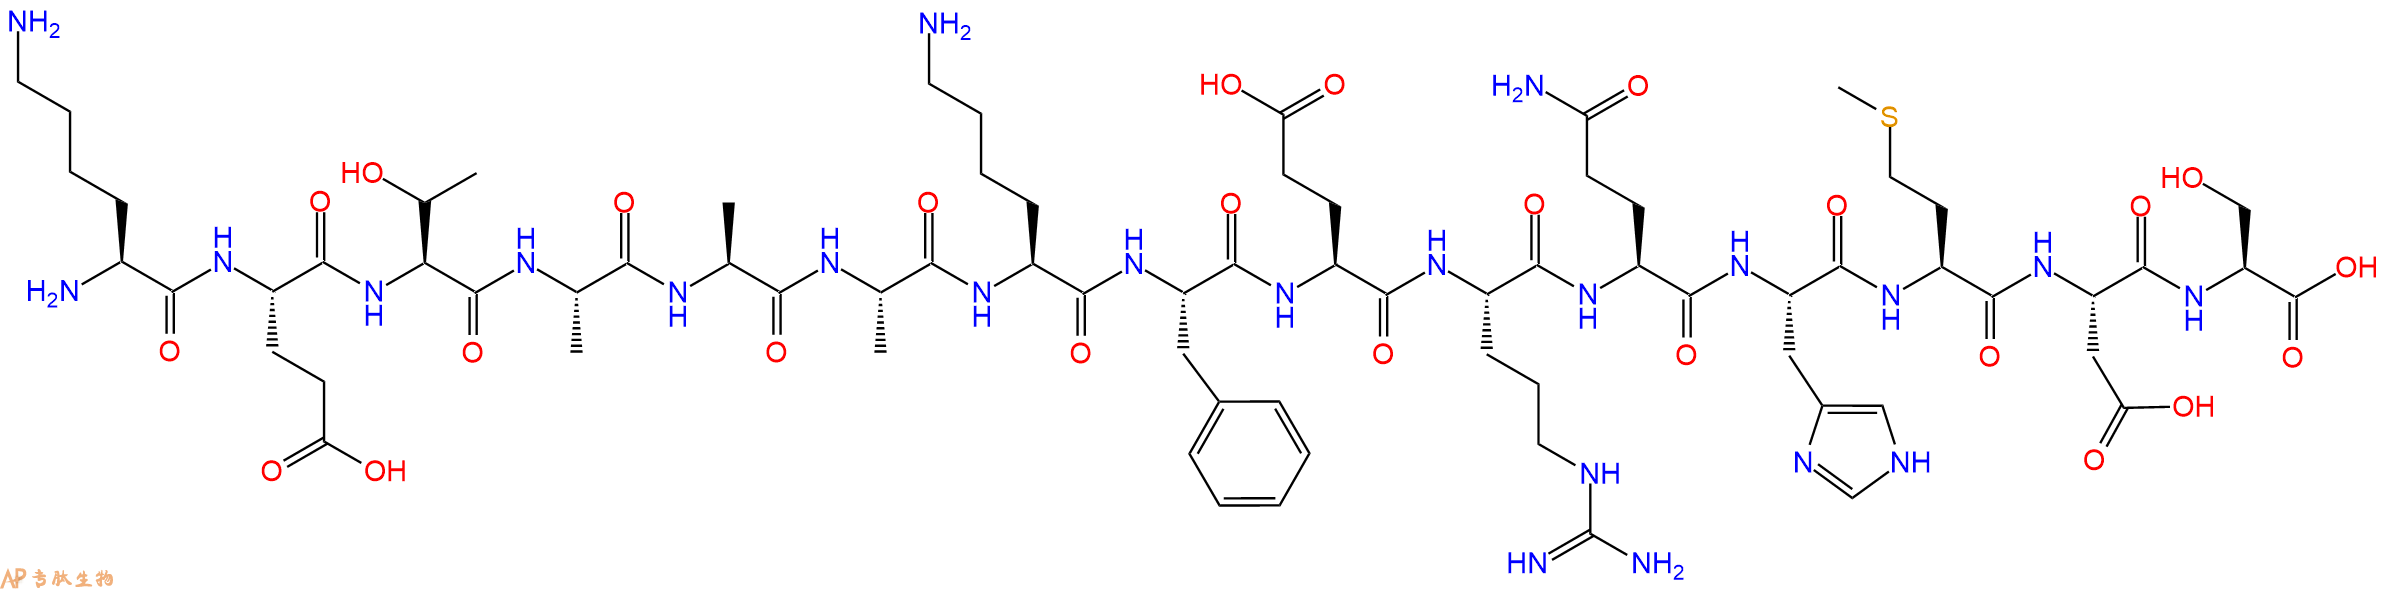 专肽生物产品胰RNase A衍生物、多肽标签S-tag 、S标签肽